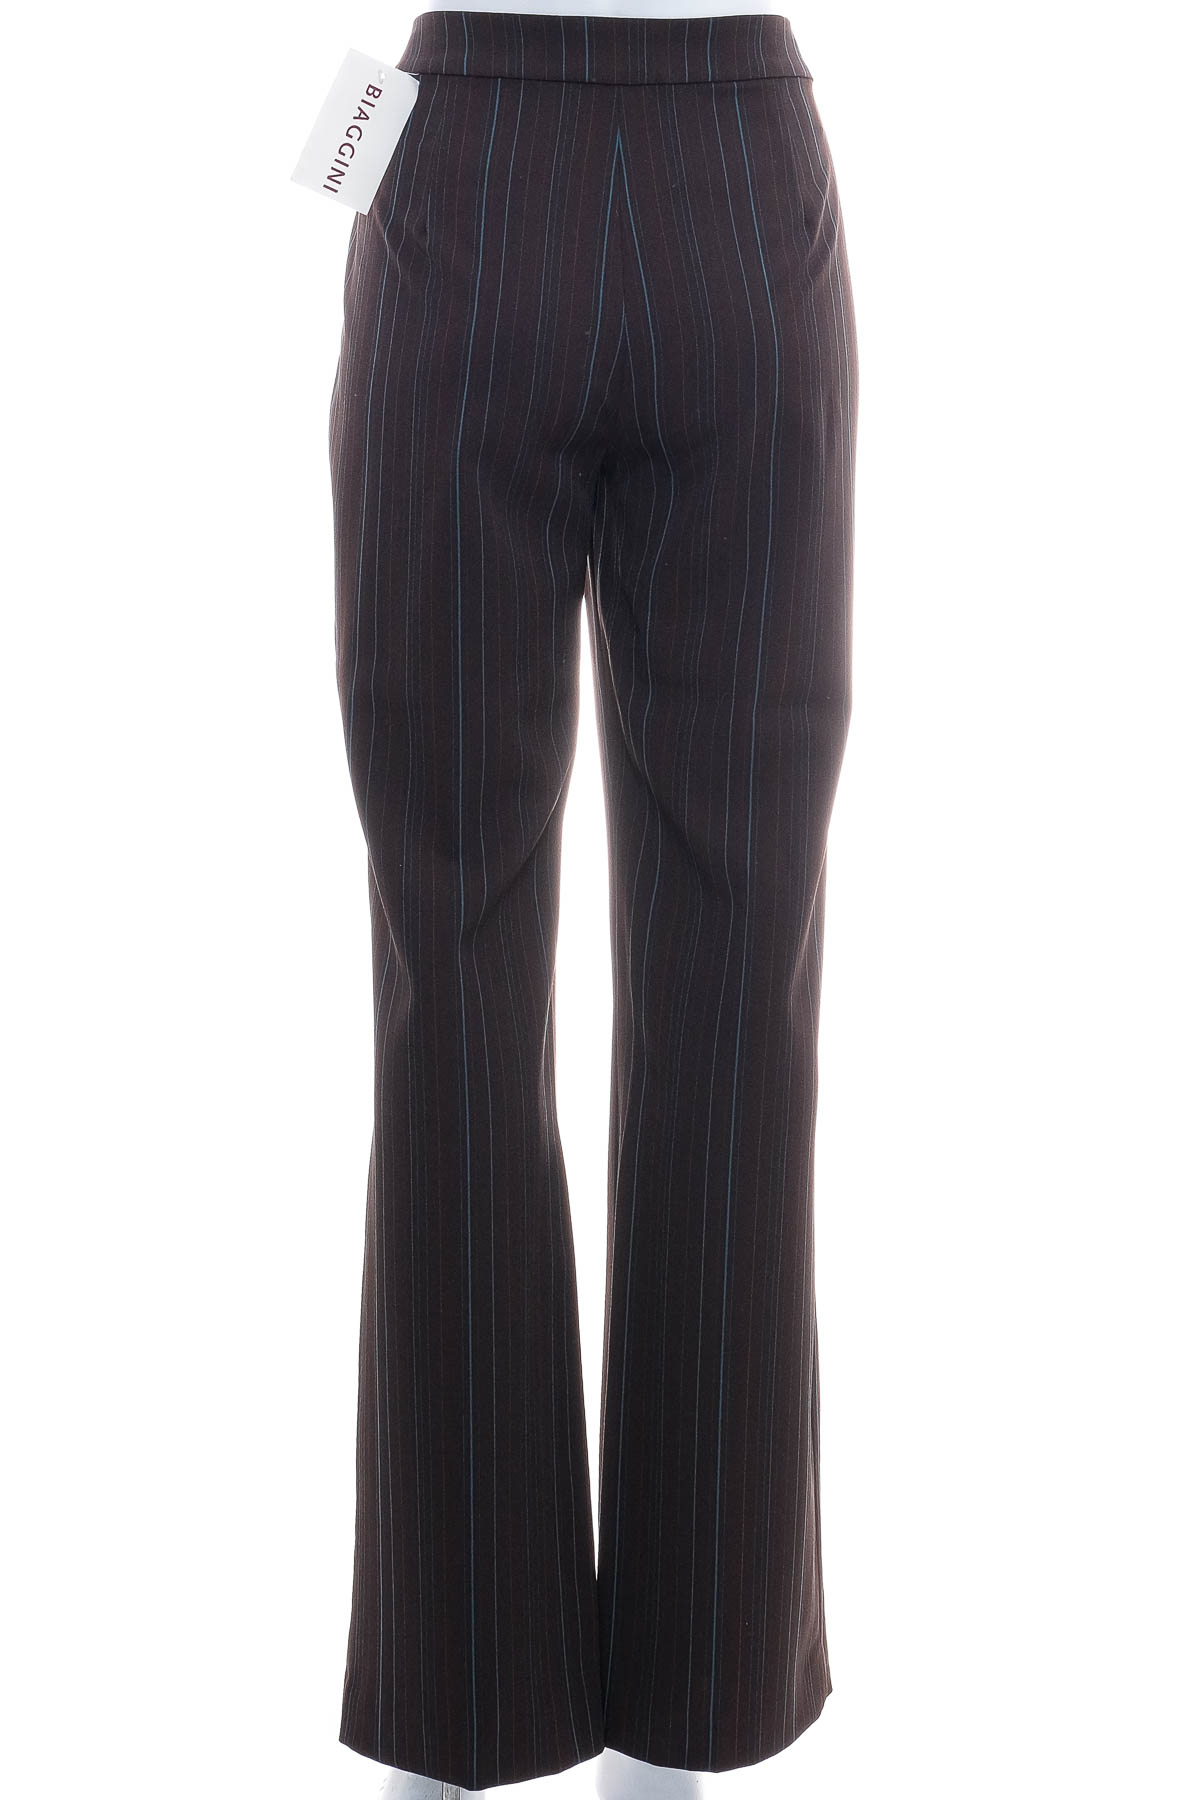 Women's trousers - Biaggini - 1